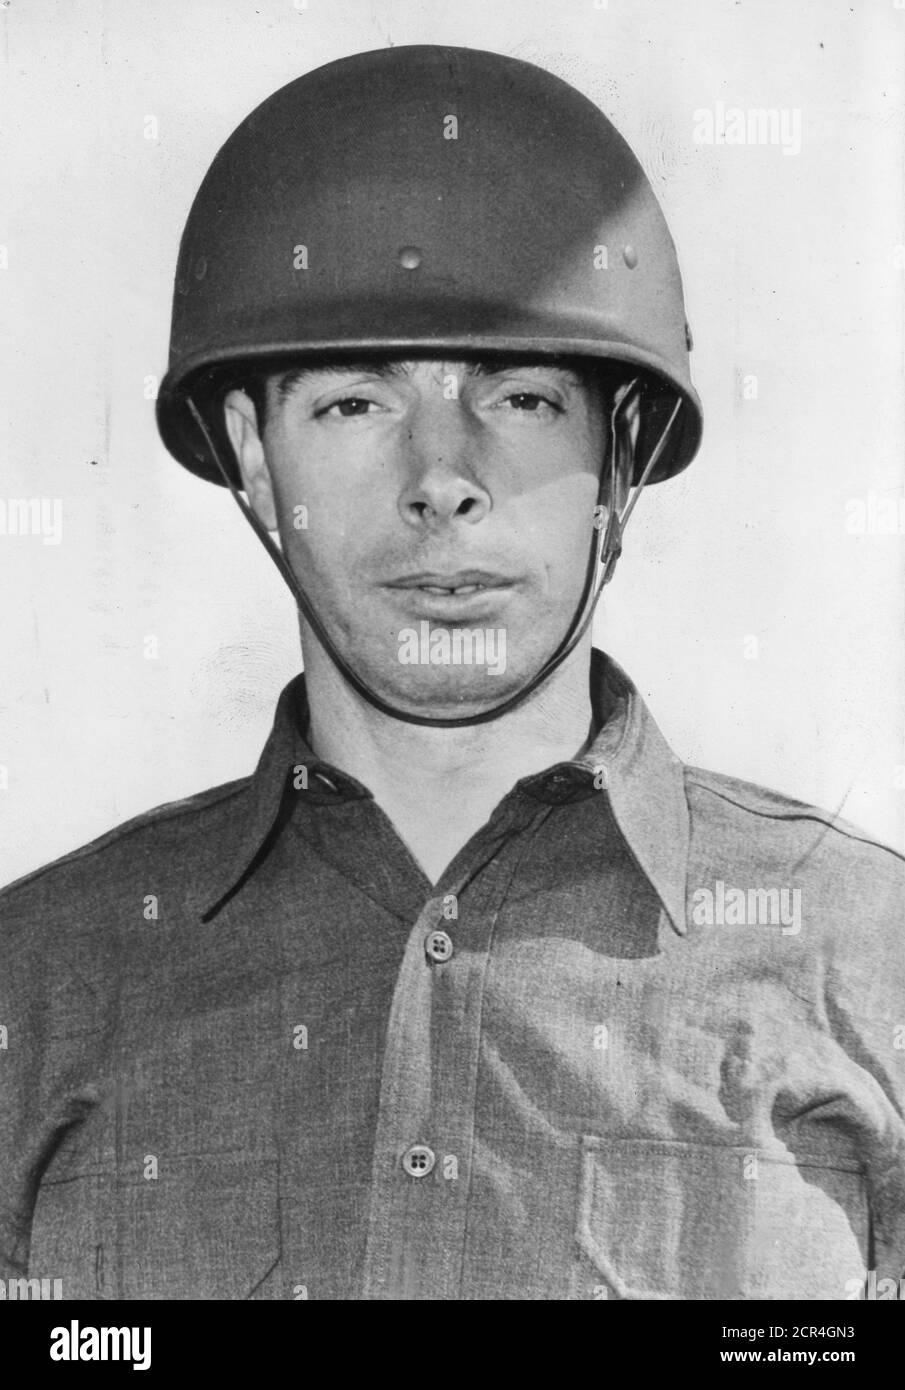 Nahaufnahme von Joe Dimaggio (1914-1999), Privatspieler und Baseballspieler der US Army, 1943. (Foto von US Army/RBM Vintage Images) Stockfoto